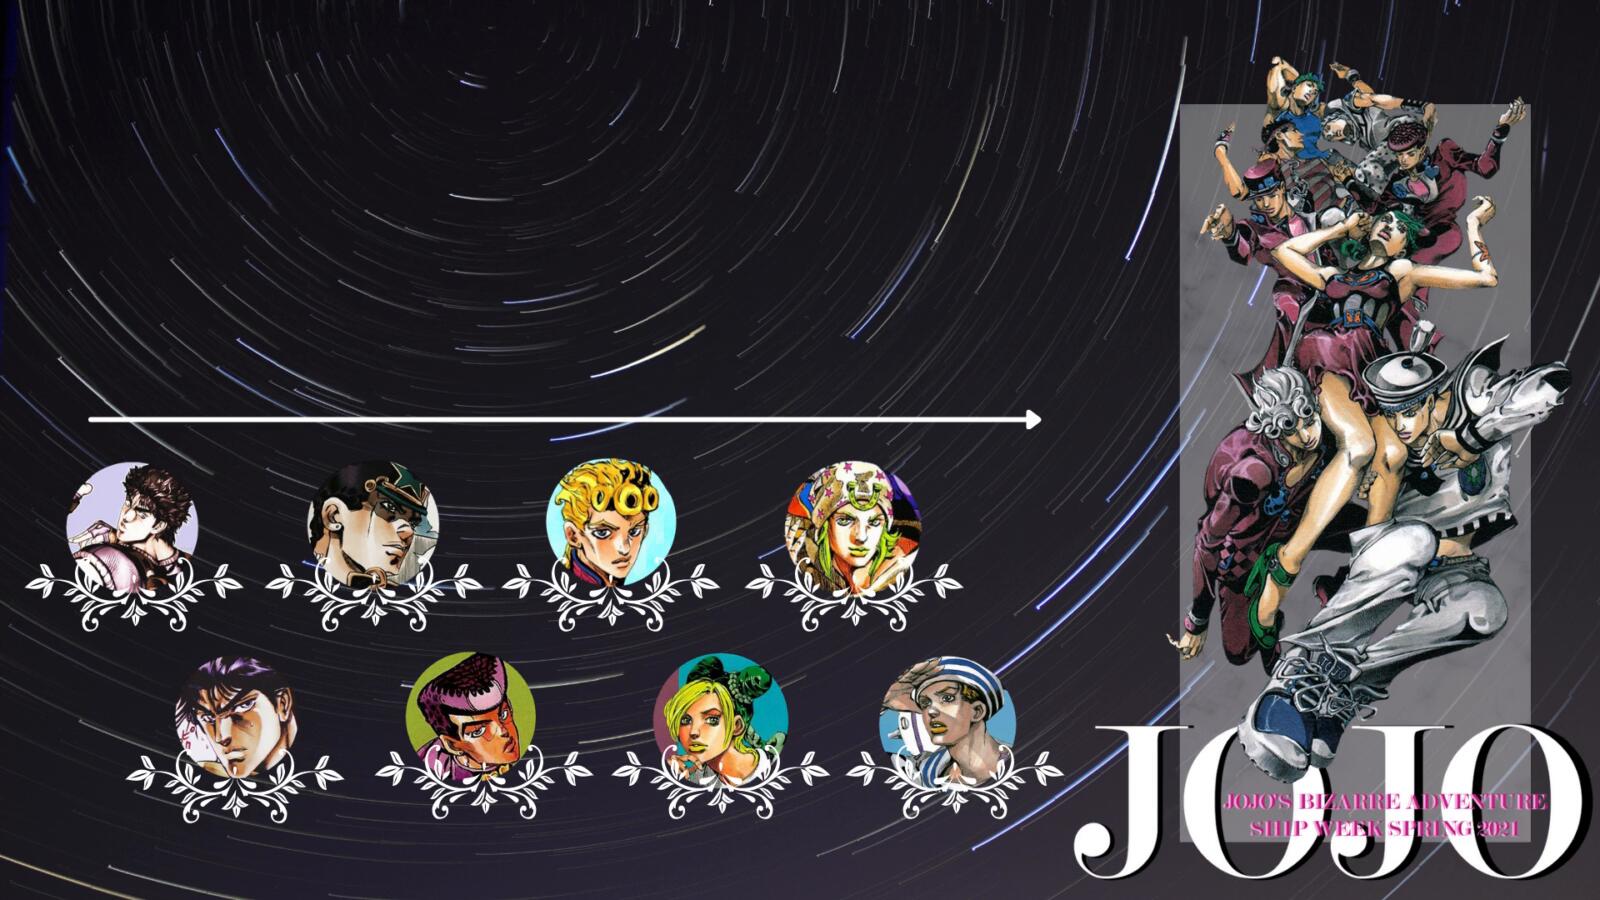 JoJo's Weekly Tournaments (@JoJosweeklys) / X